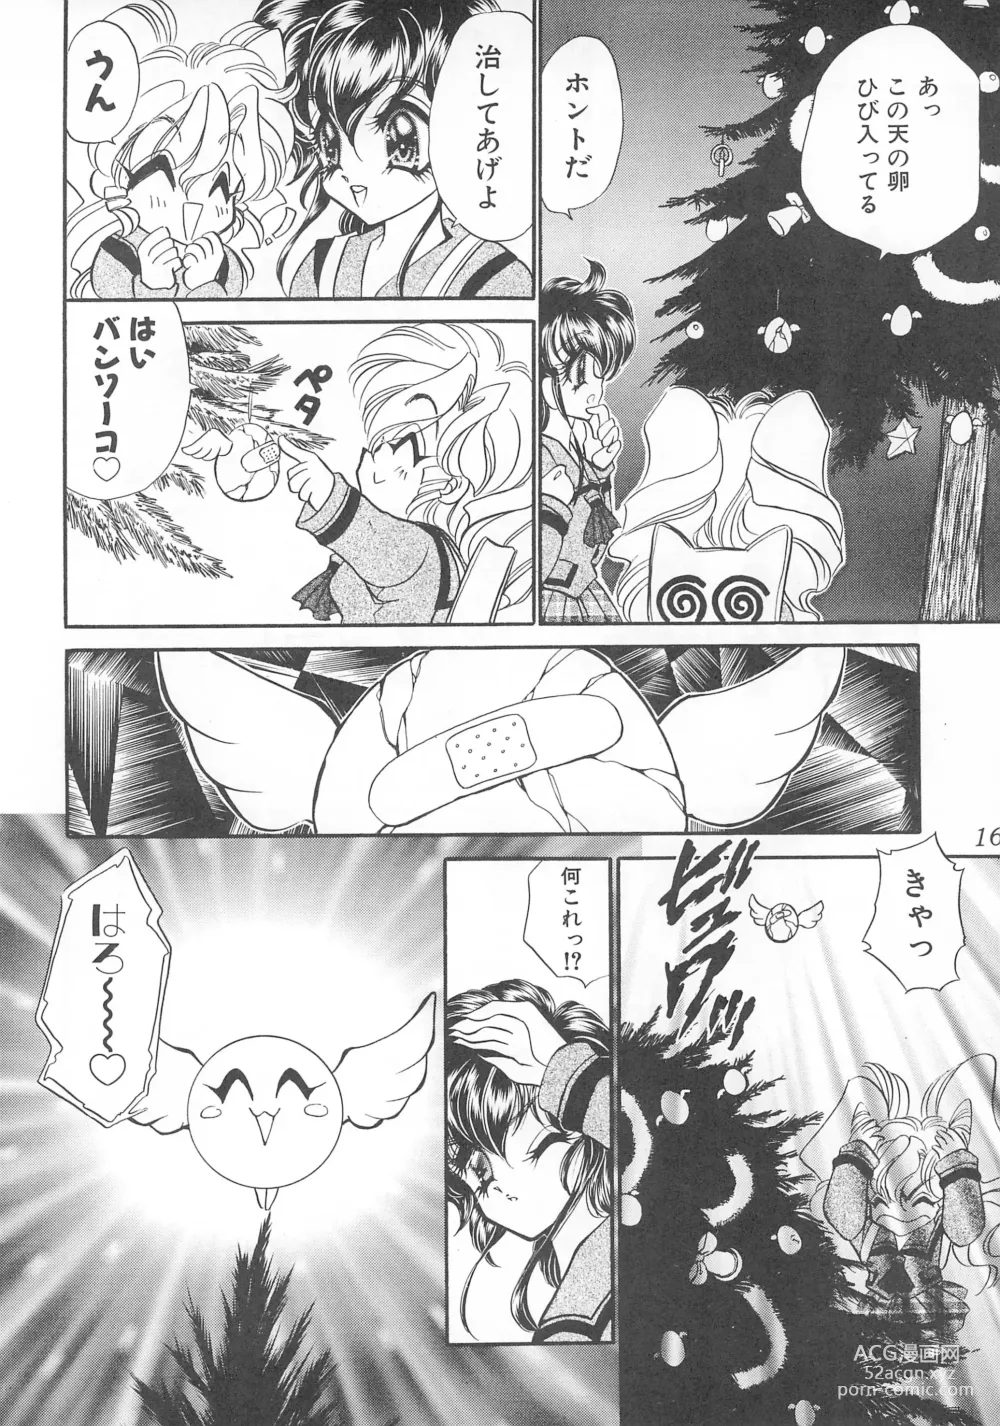 Page 16 of doujinshi MAX 6